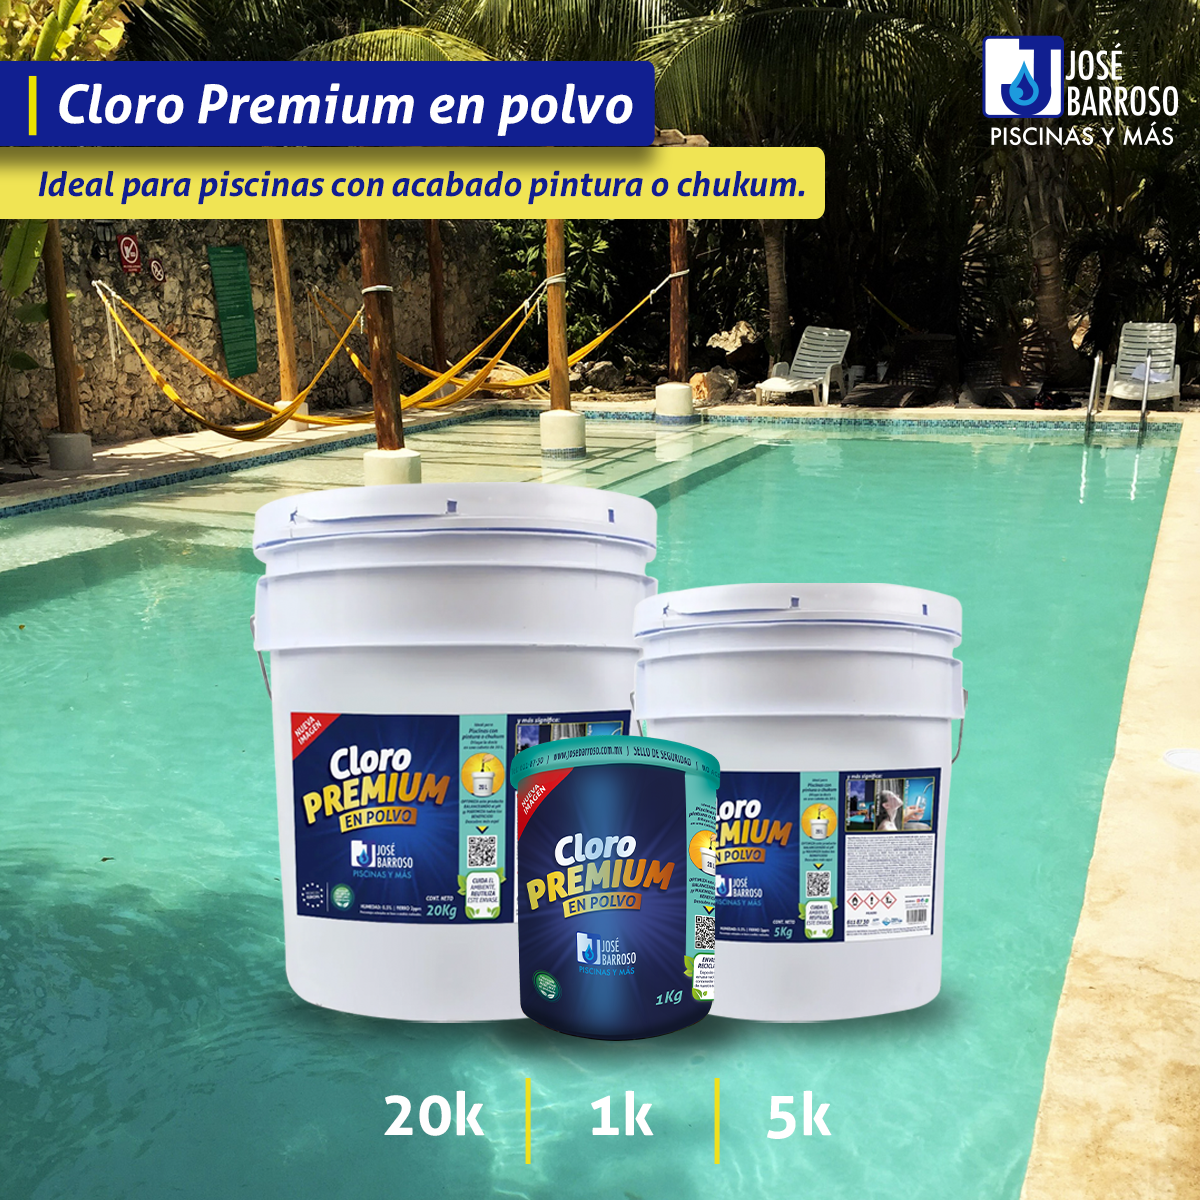 Cloro En Polvo Premium 20kg - 35% Más De Rendimiento!